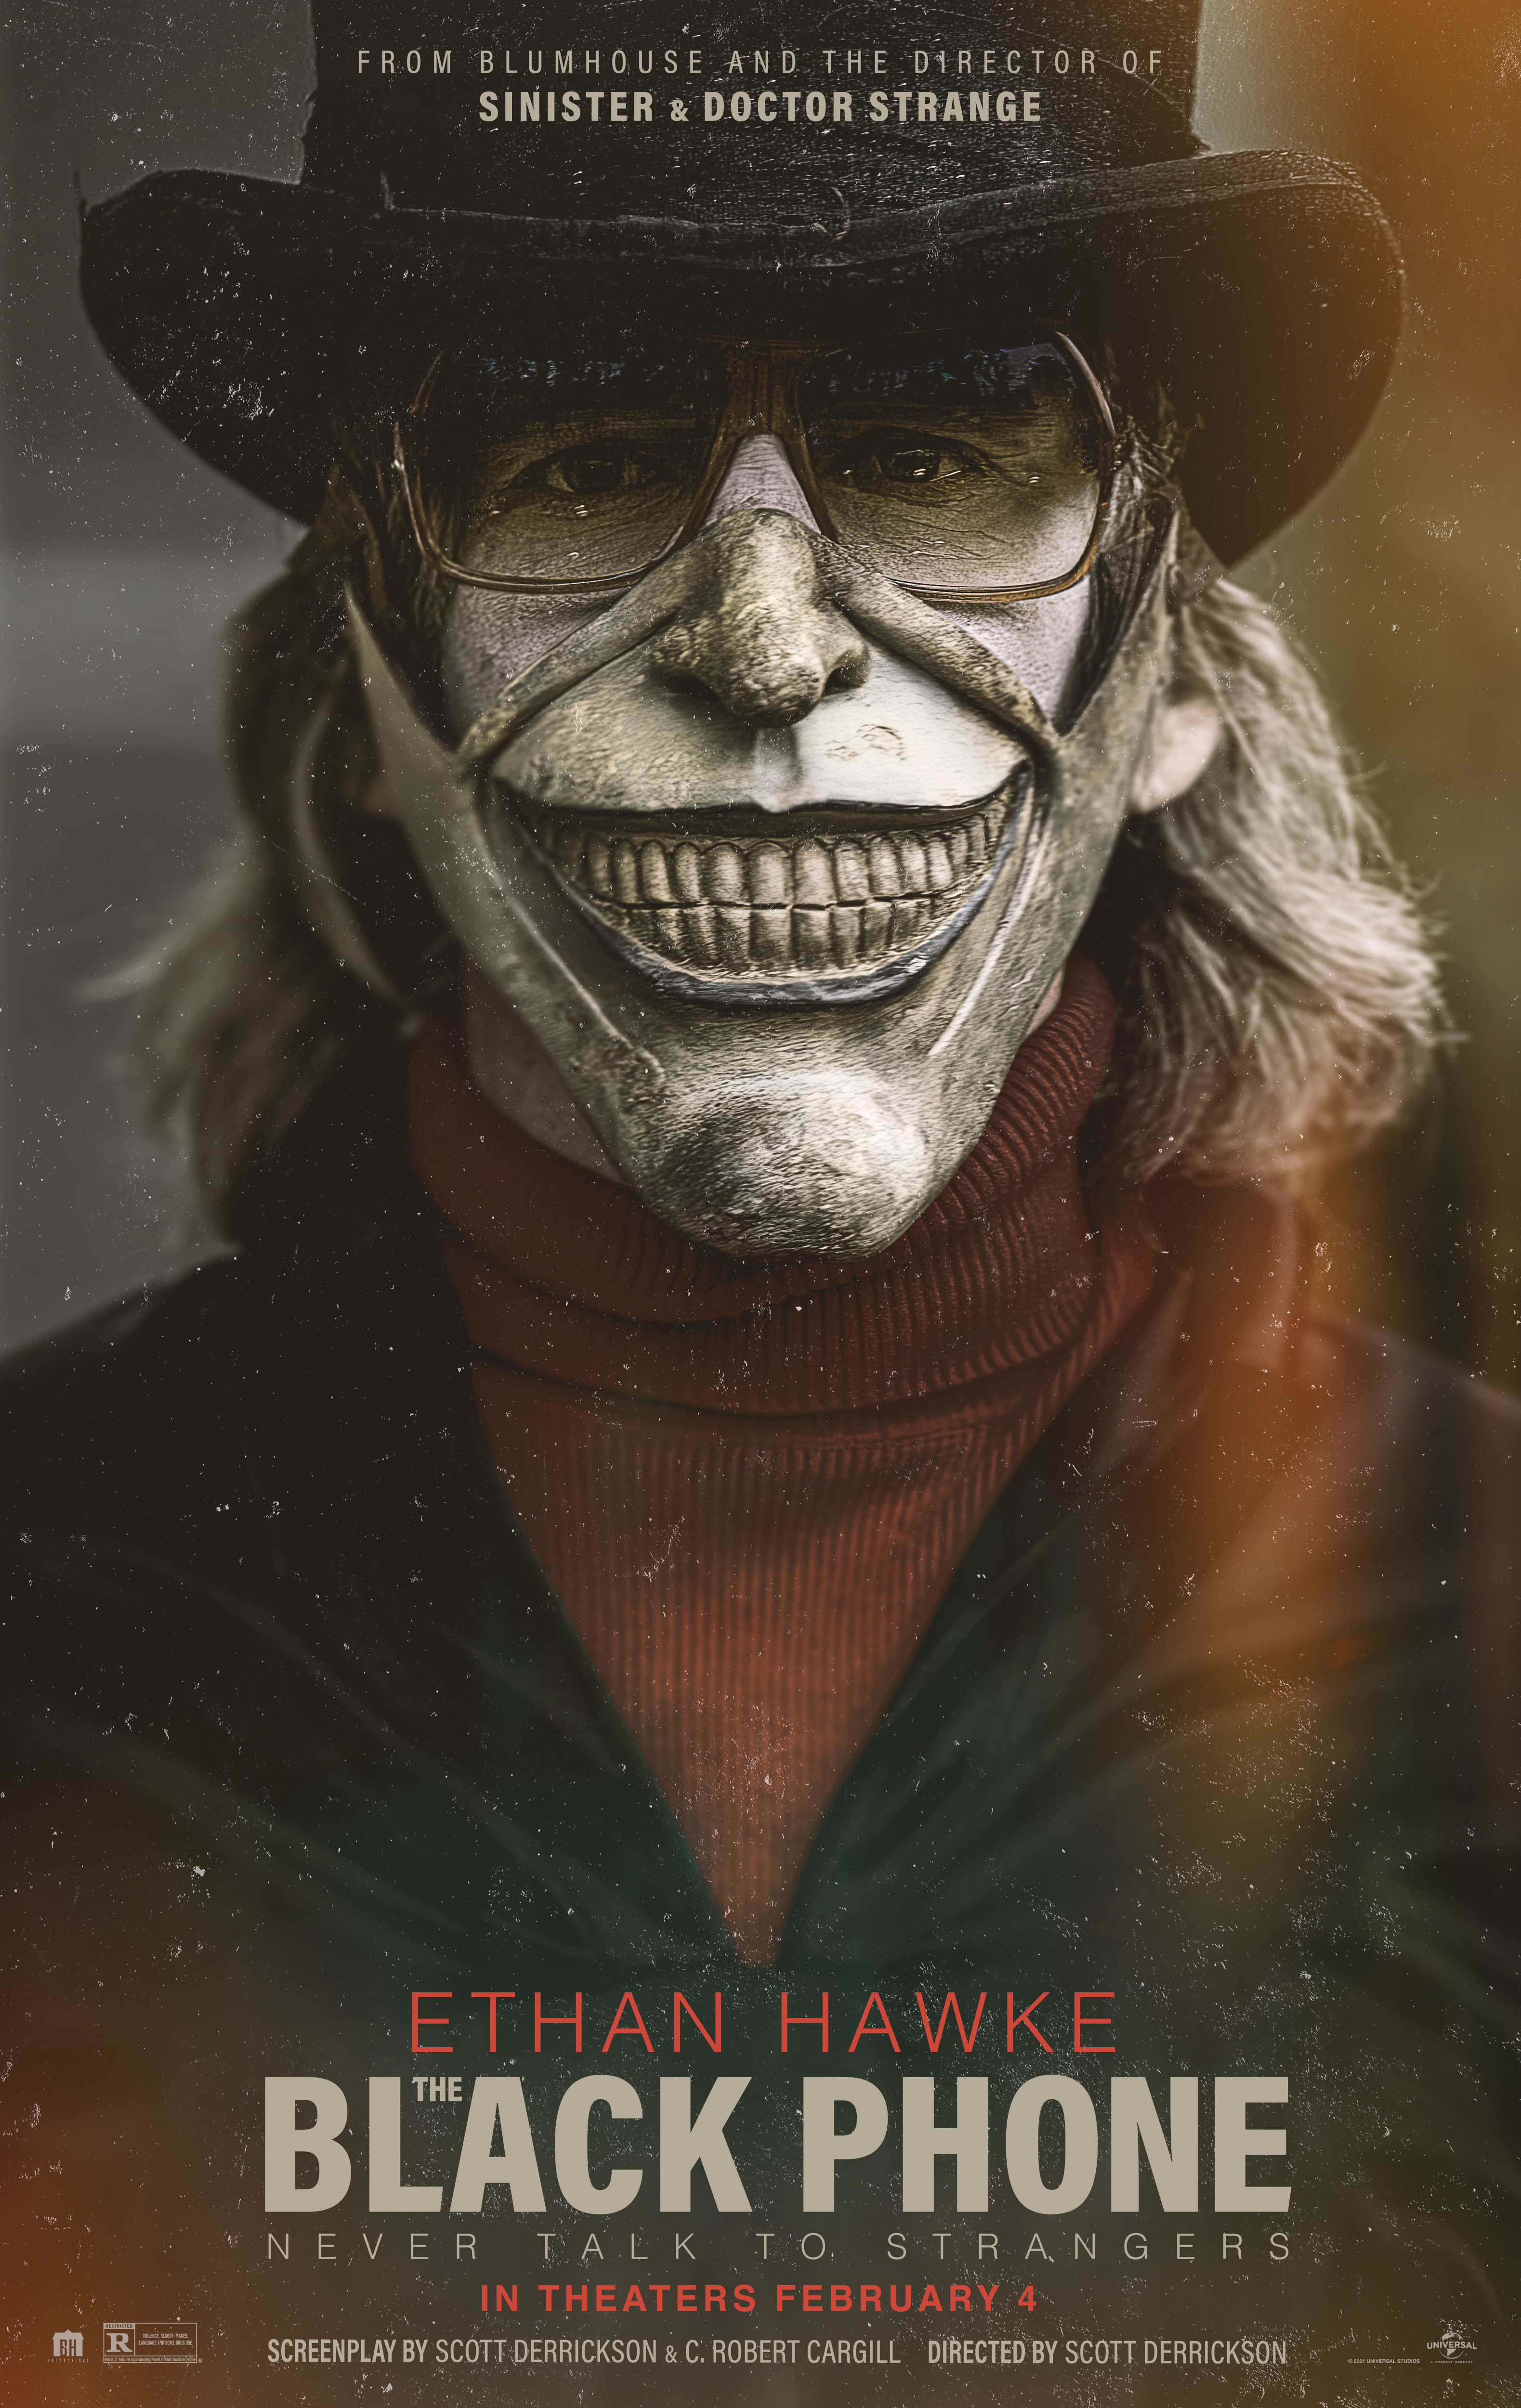 il poster del film ritrae il serial killer con la sua terrificante maschera - nerdface